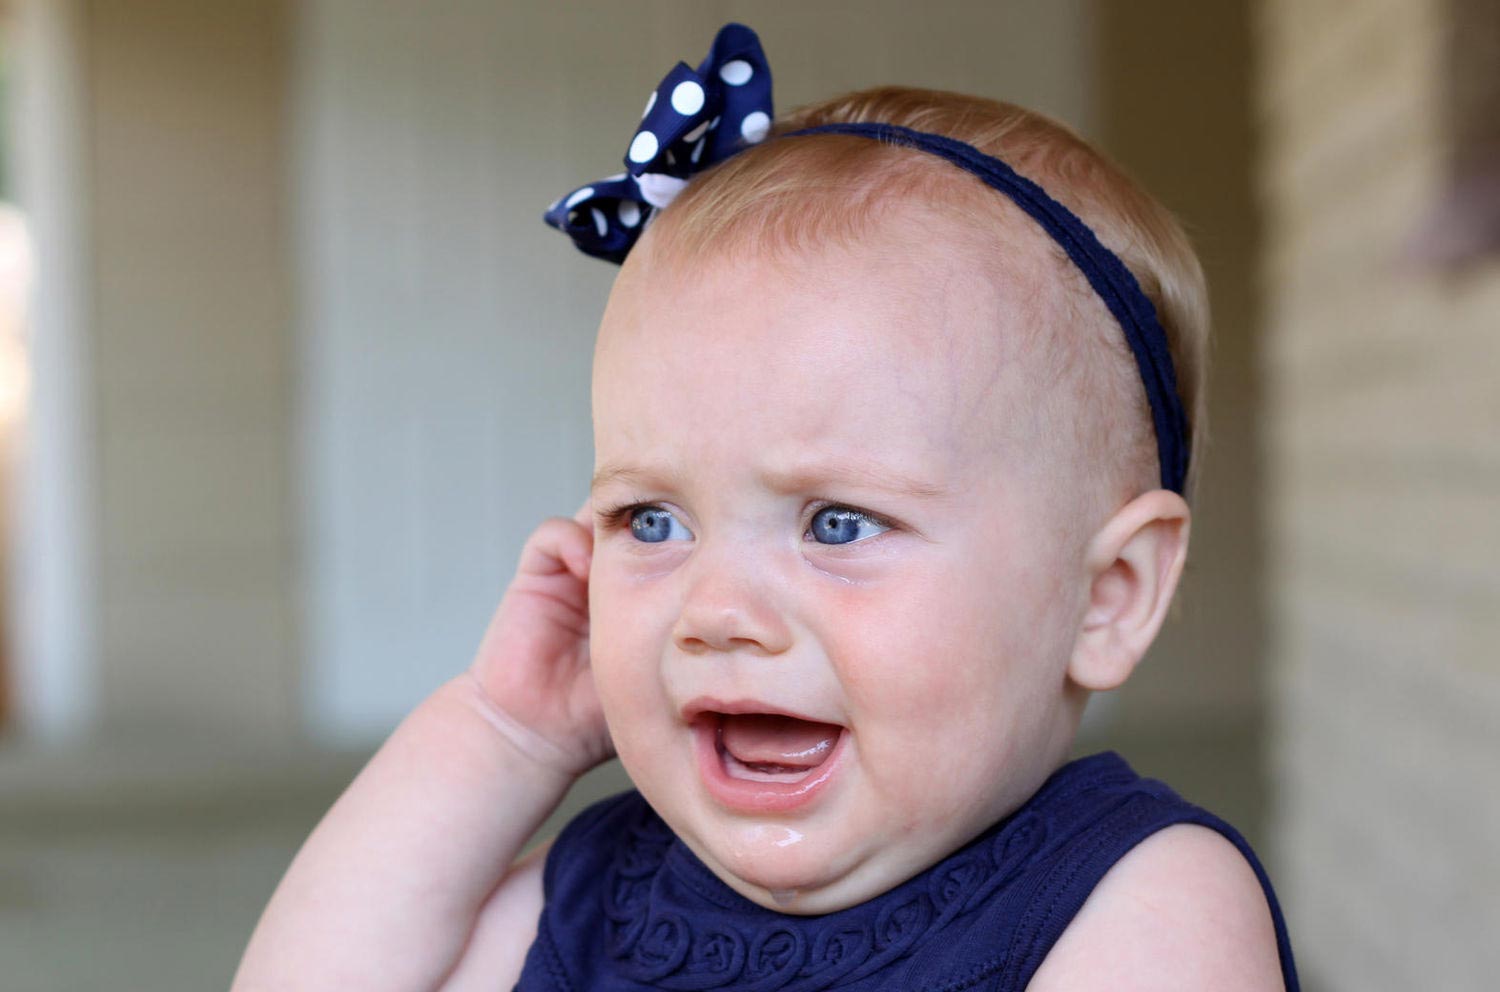 عفونت گوش در نوزاد هشت ماهه
